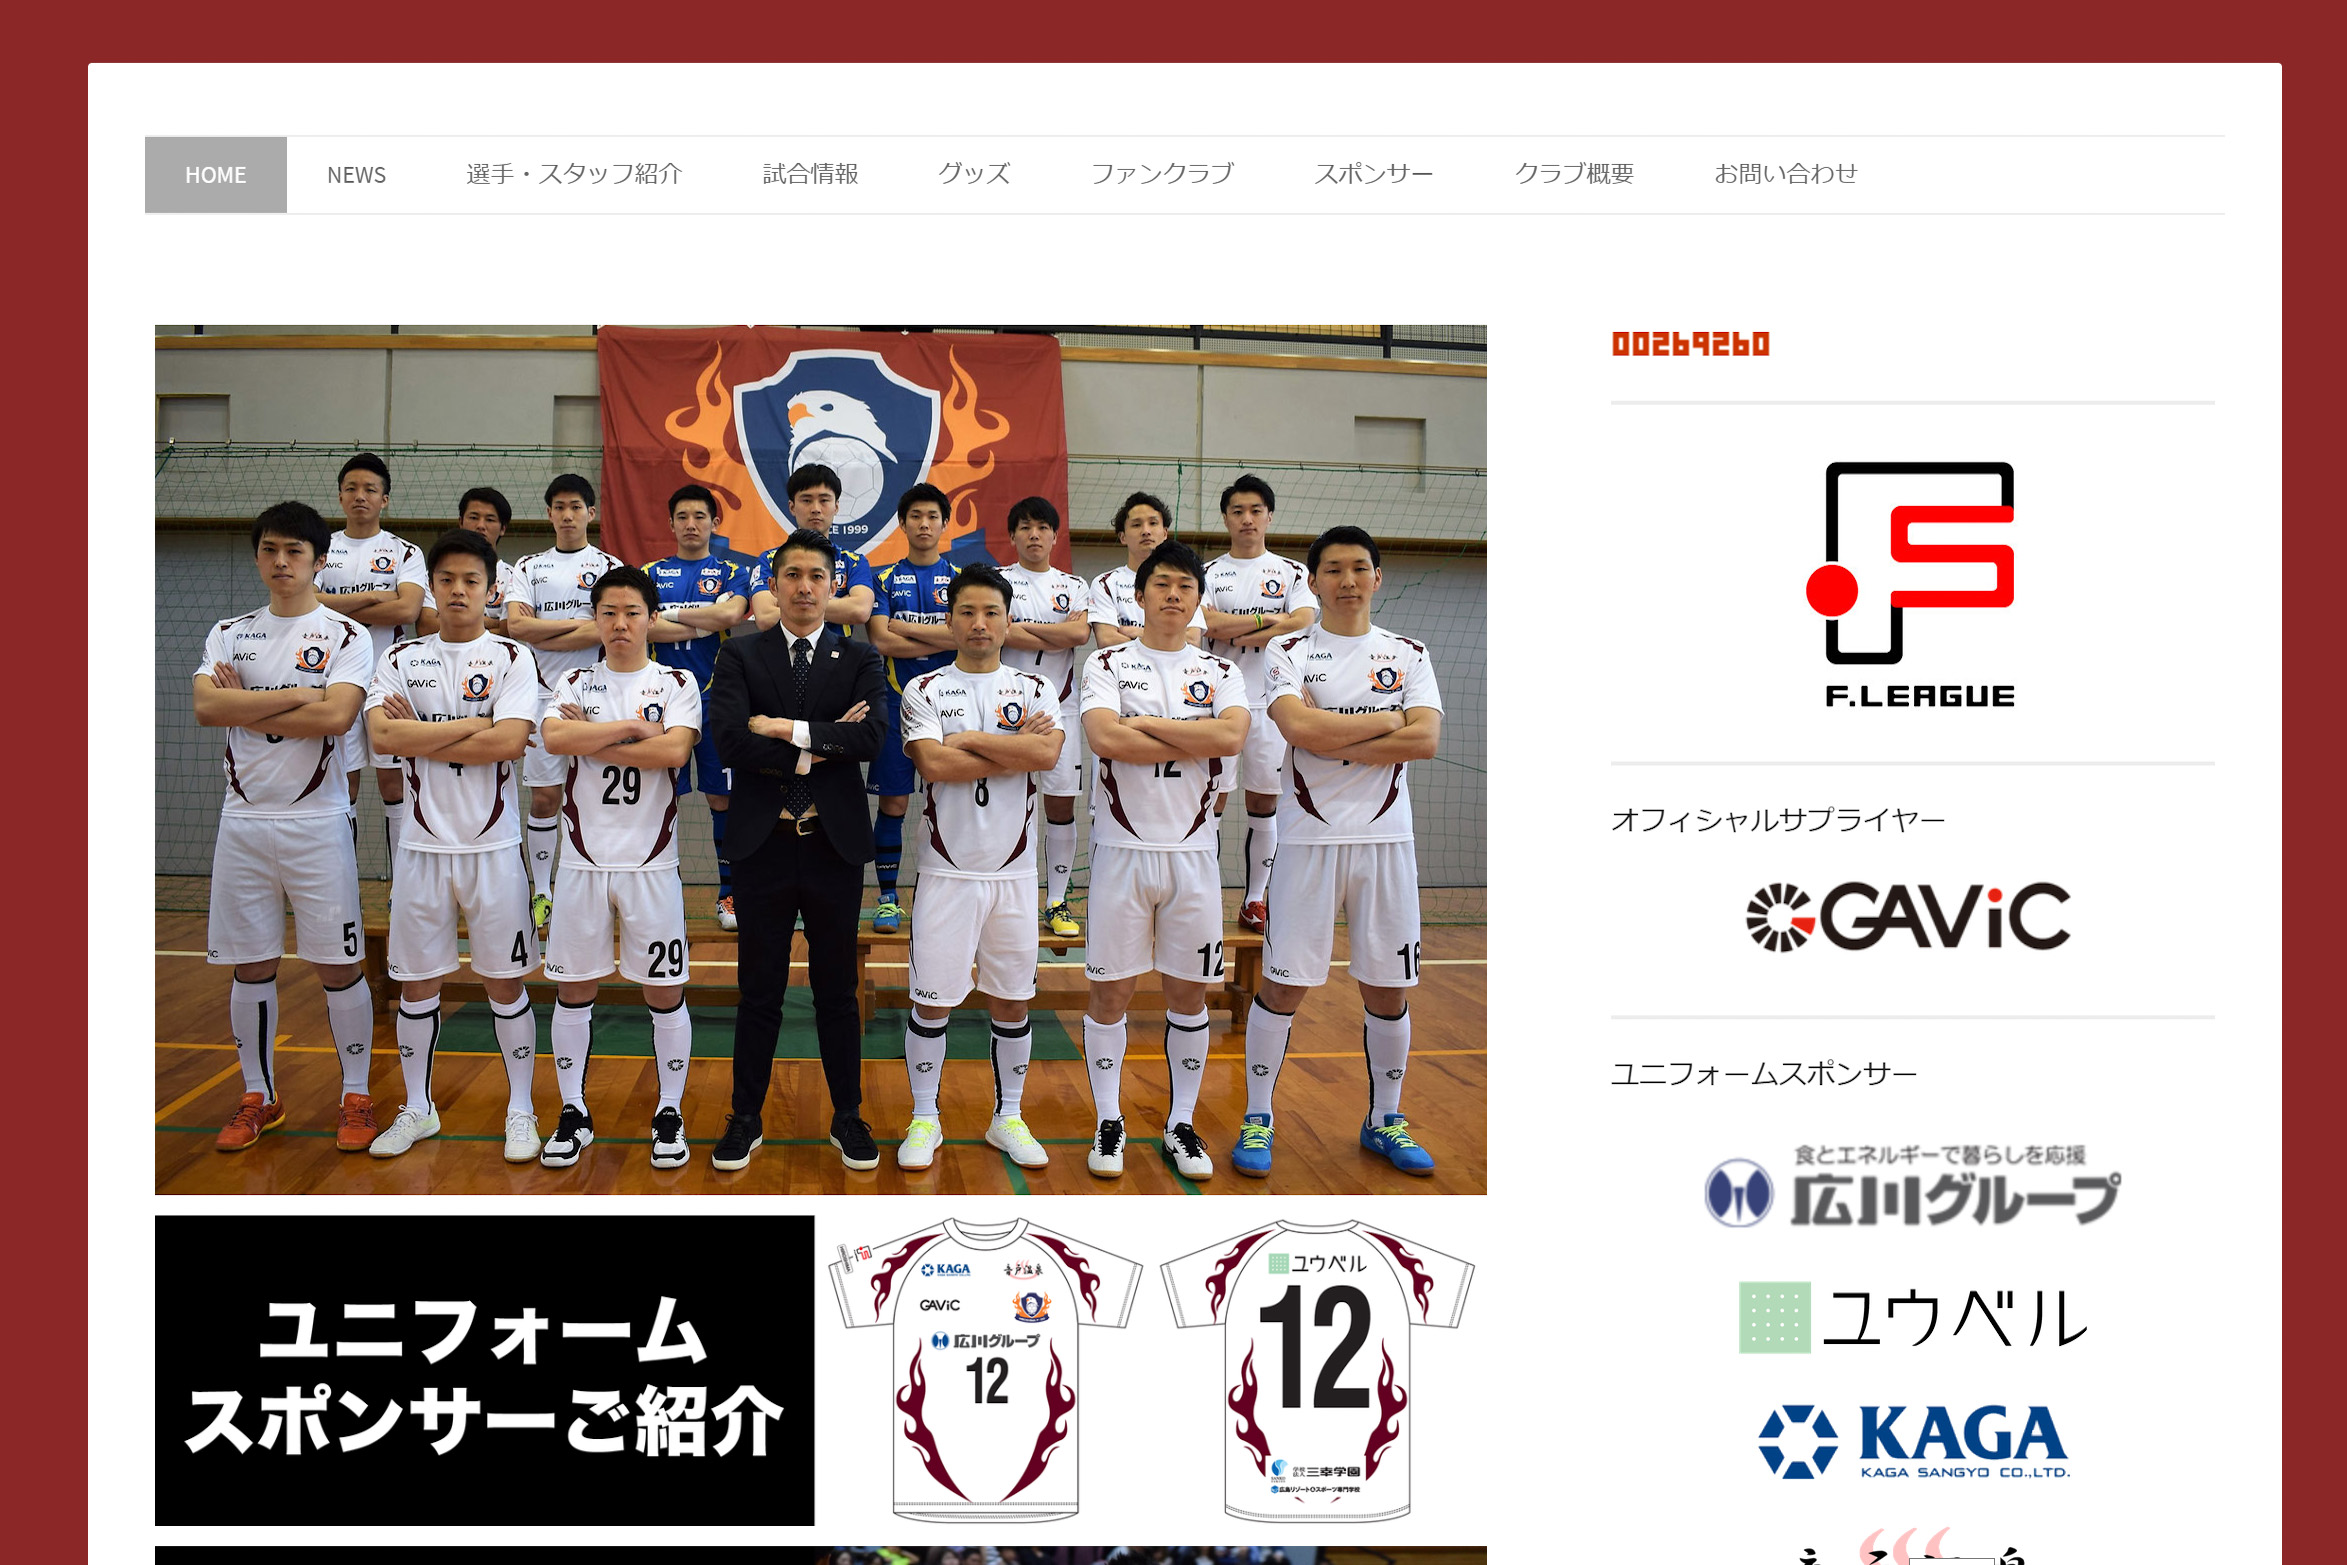 移籍情報 広島エフ ドゥが大分退団のgk尾関潤ら5選手の入団を一挙発表 フットサル全力応援メディア Sal